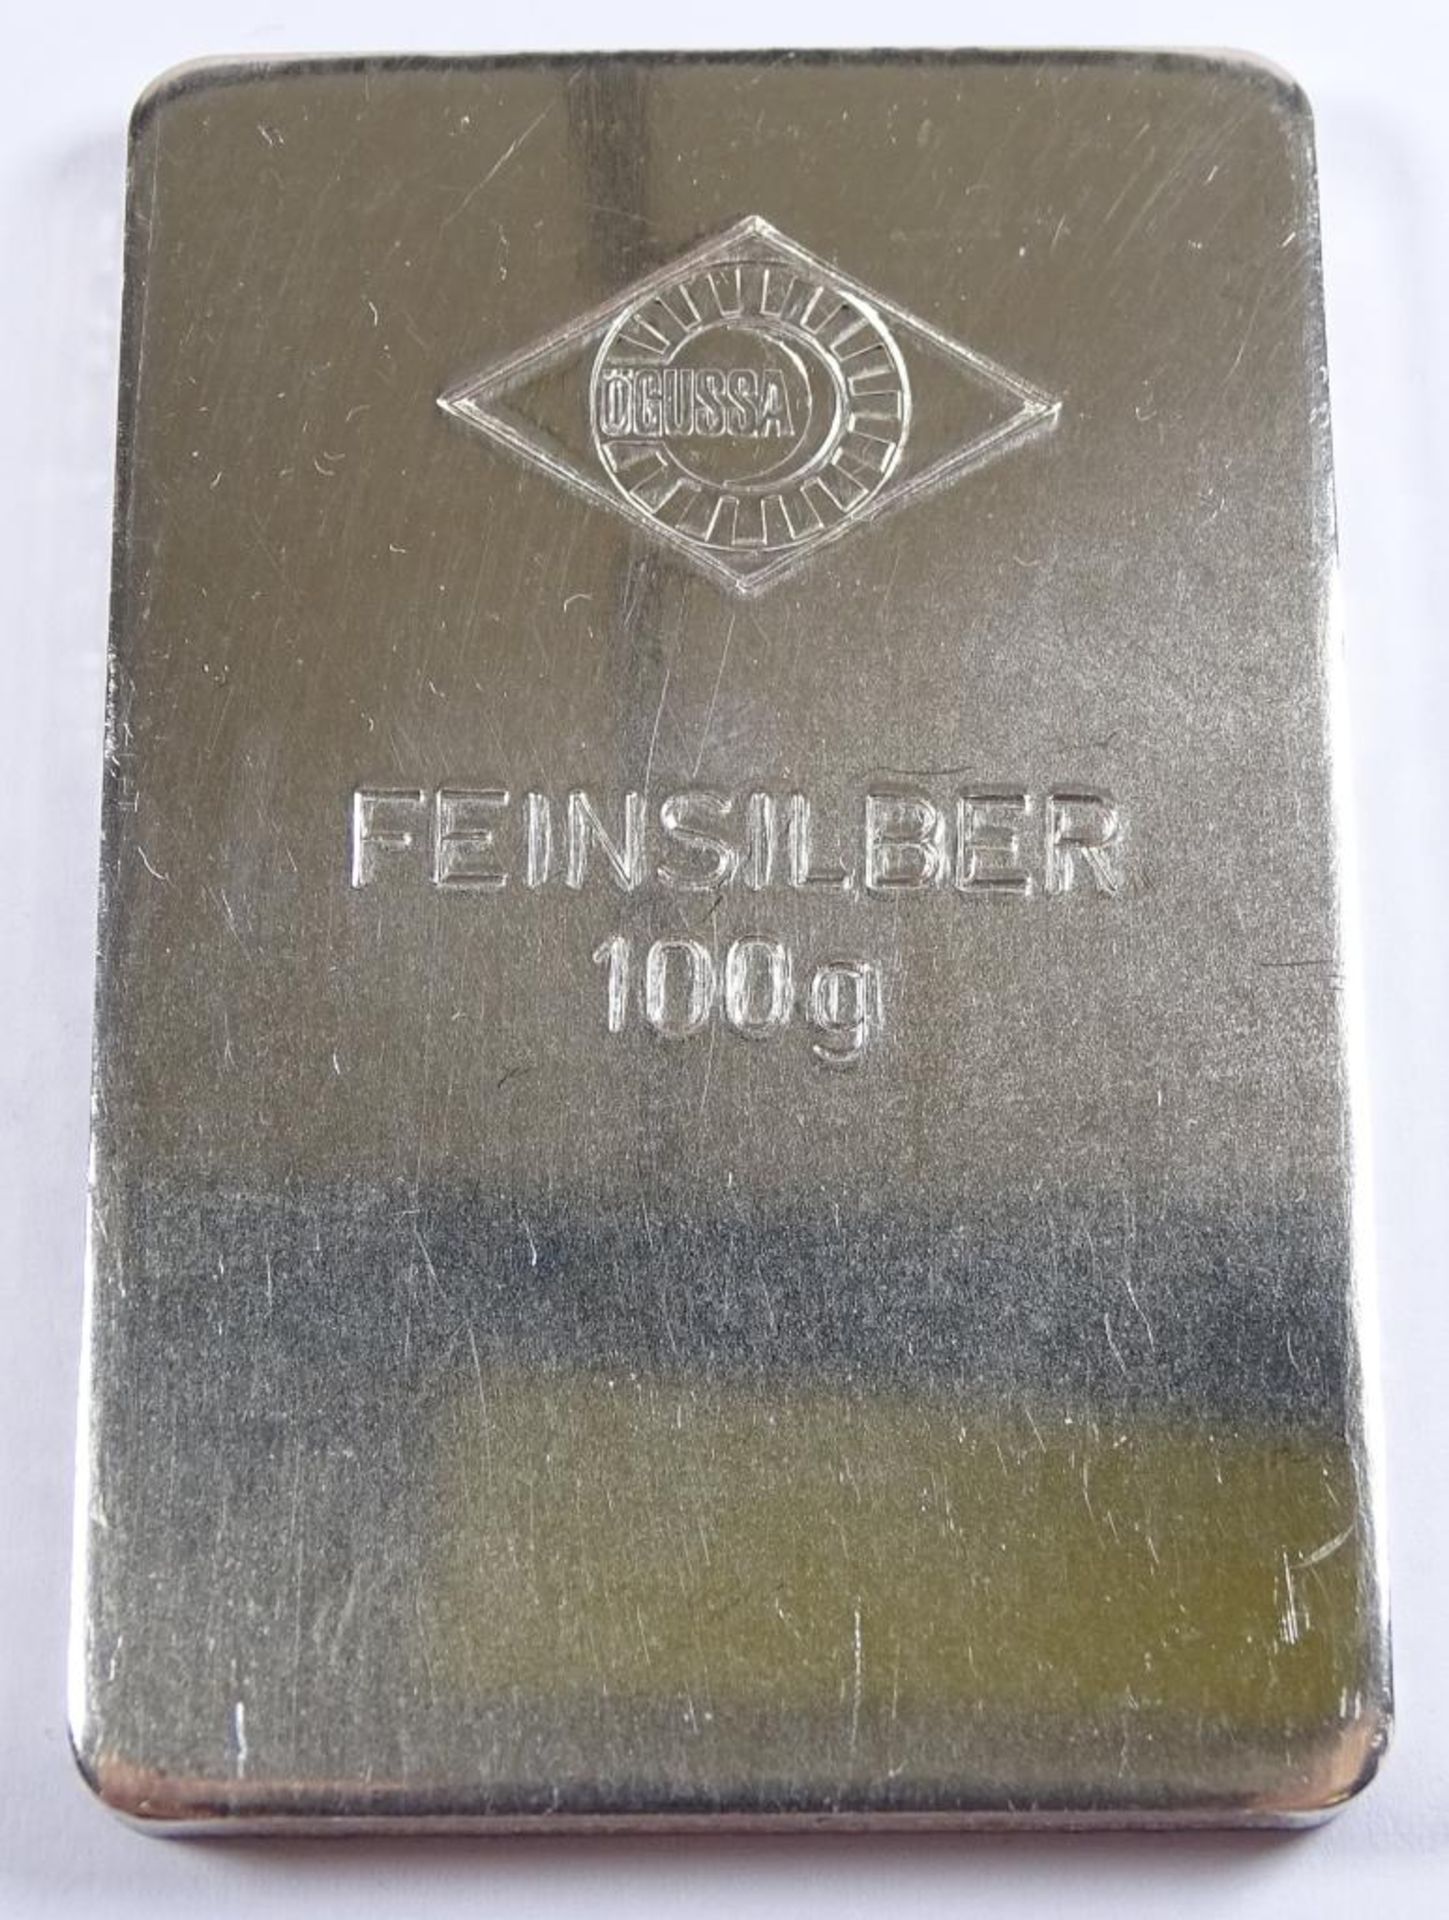 100g Feinsilber Barren,6,0x4,0 cm,Alters-u. Gebrauchsspuren